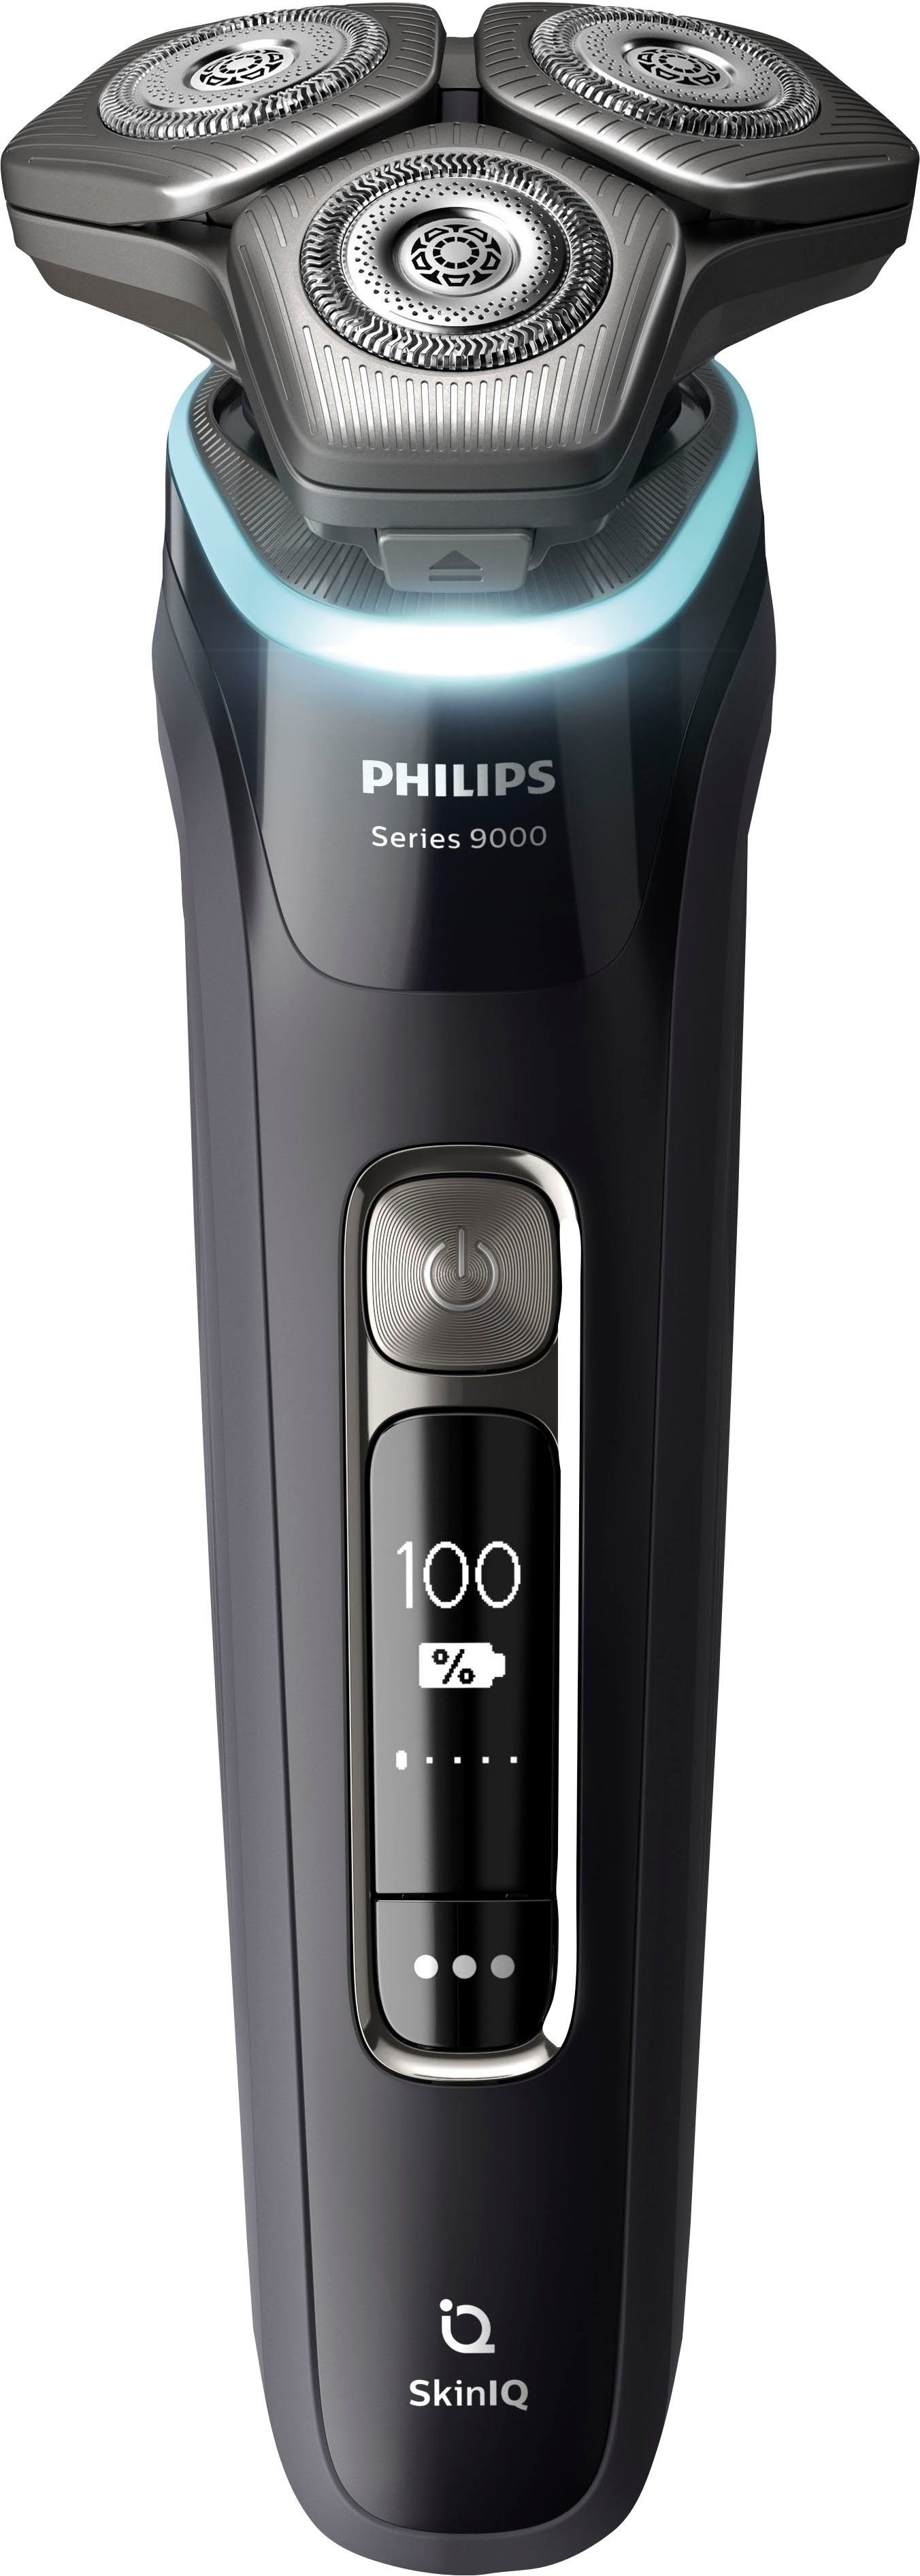 Philips Elektrorasierer Shaver Series 9000 SkinIQ Reinigungskartuschen, mit Technologie Ladestand, integrierter Etui, Präzisionstrimmer, 2 S9976/55